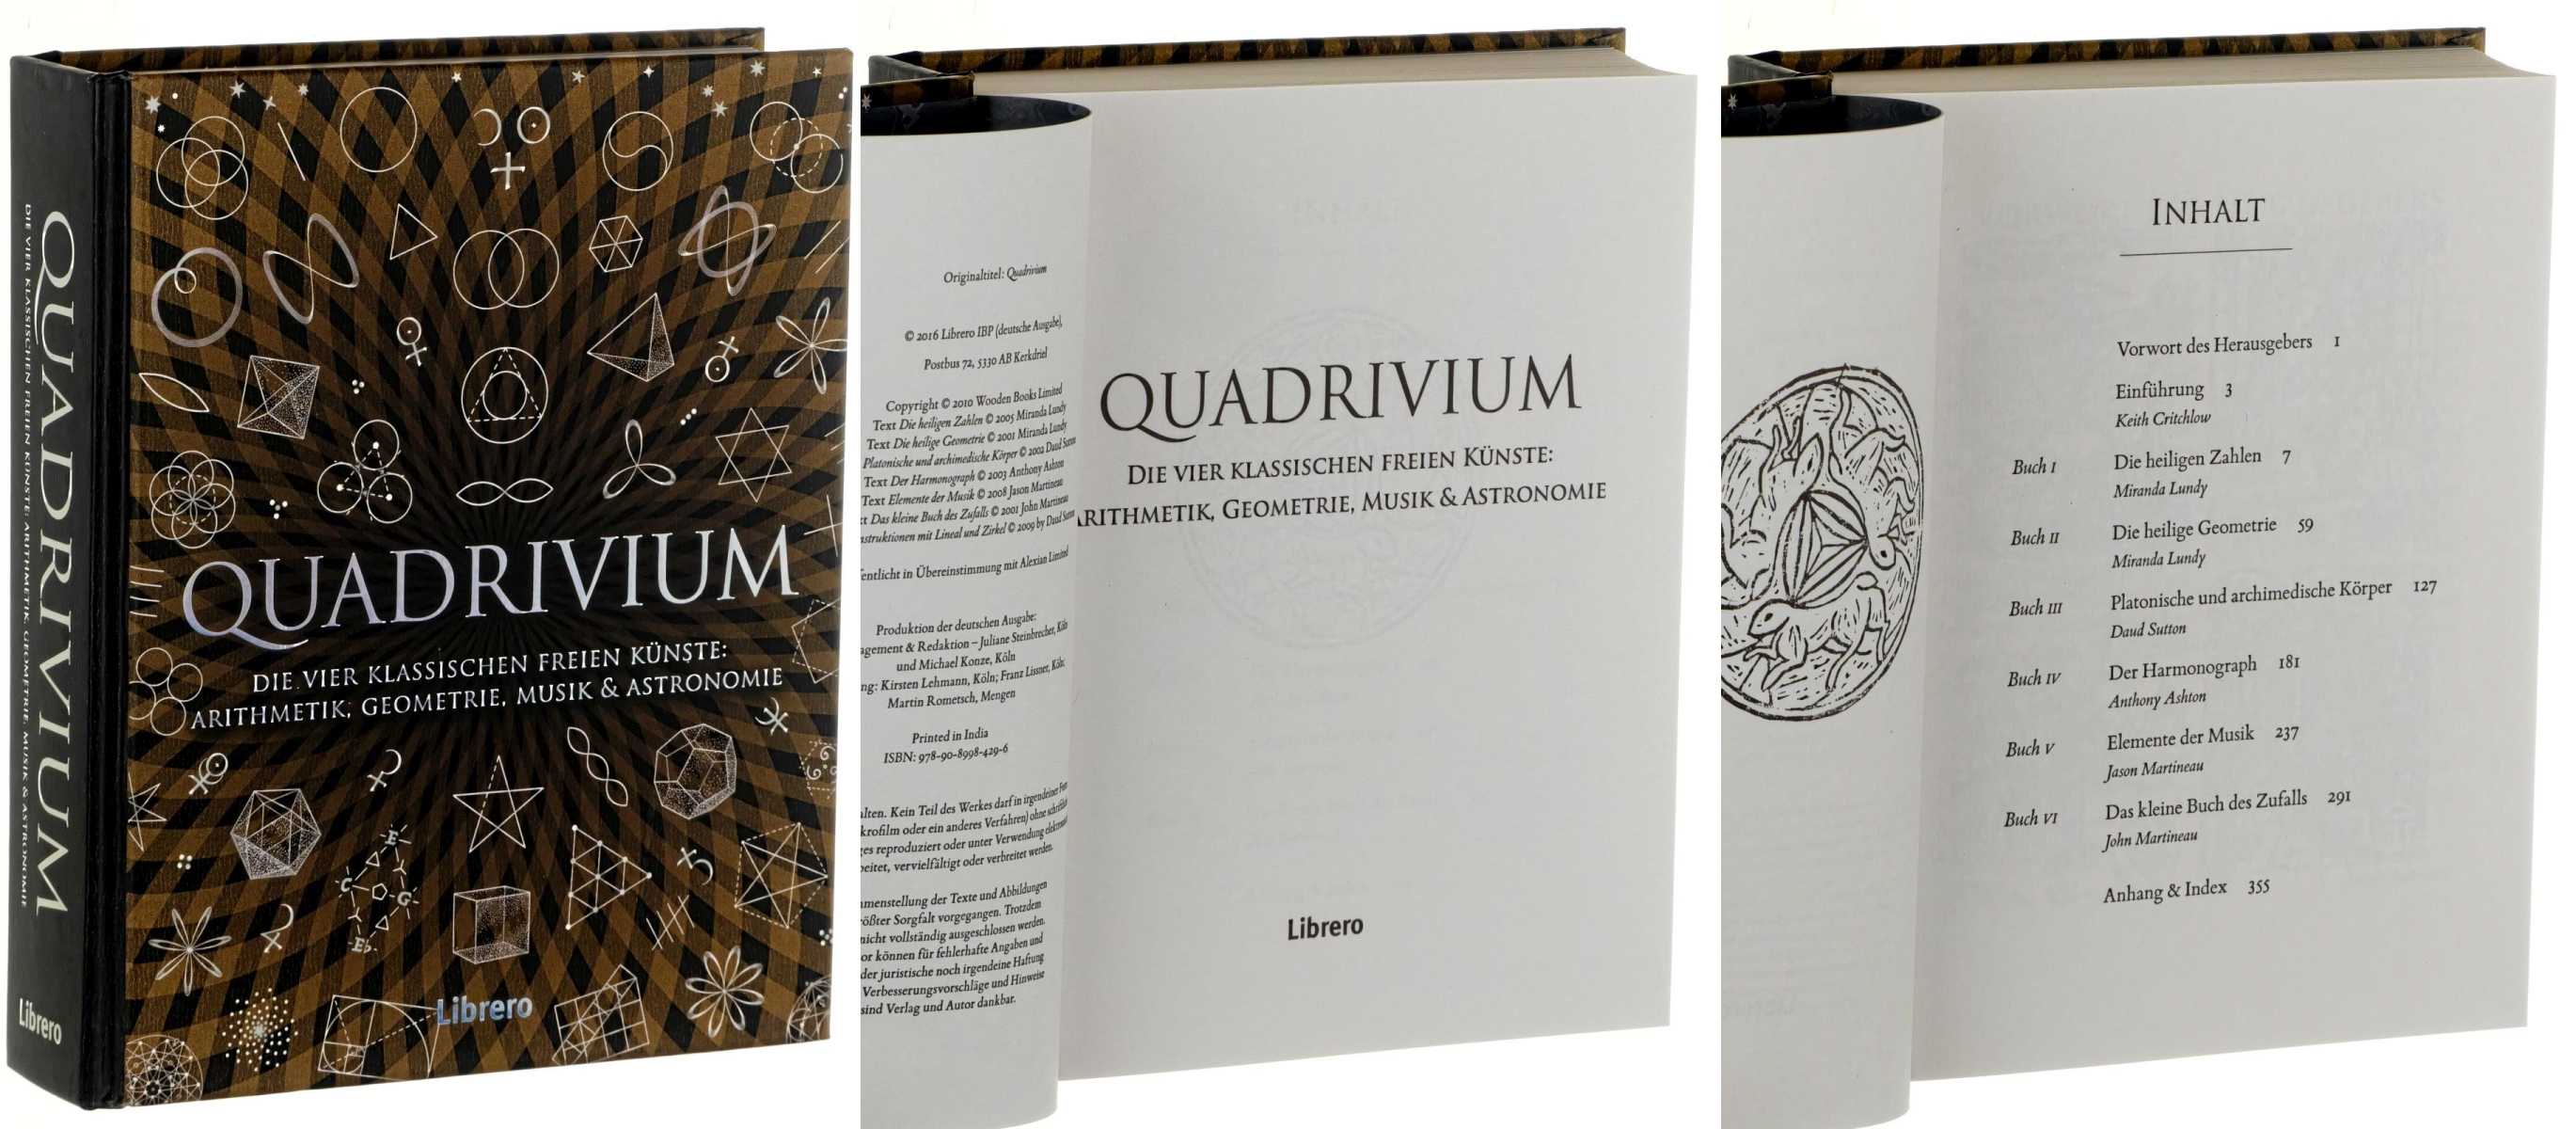   Quadrivium. Die vier klassischen freien Künste: Arithmetik, Geometrie, Musik & Astronomie. H 